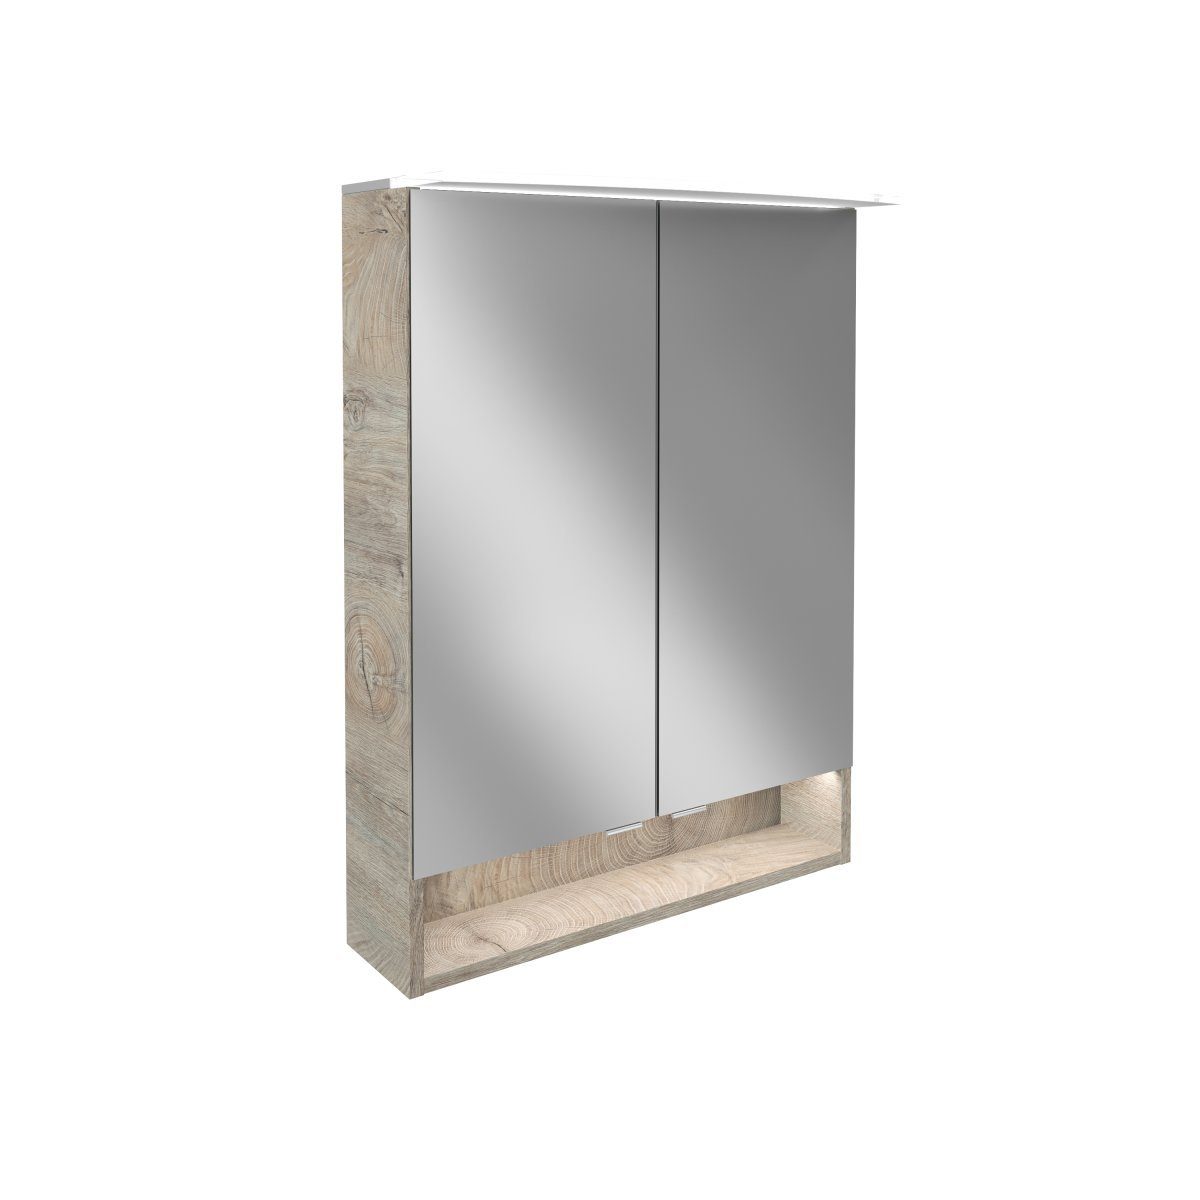 FACKELMANN Badezimmerspiegelschrank FACKELMANN LED Spiegelschrank B.STYLE / Badschrank mit gedämpften Scharnieren / Maße (B x